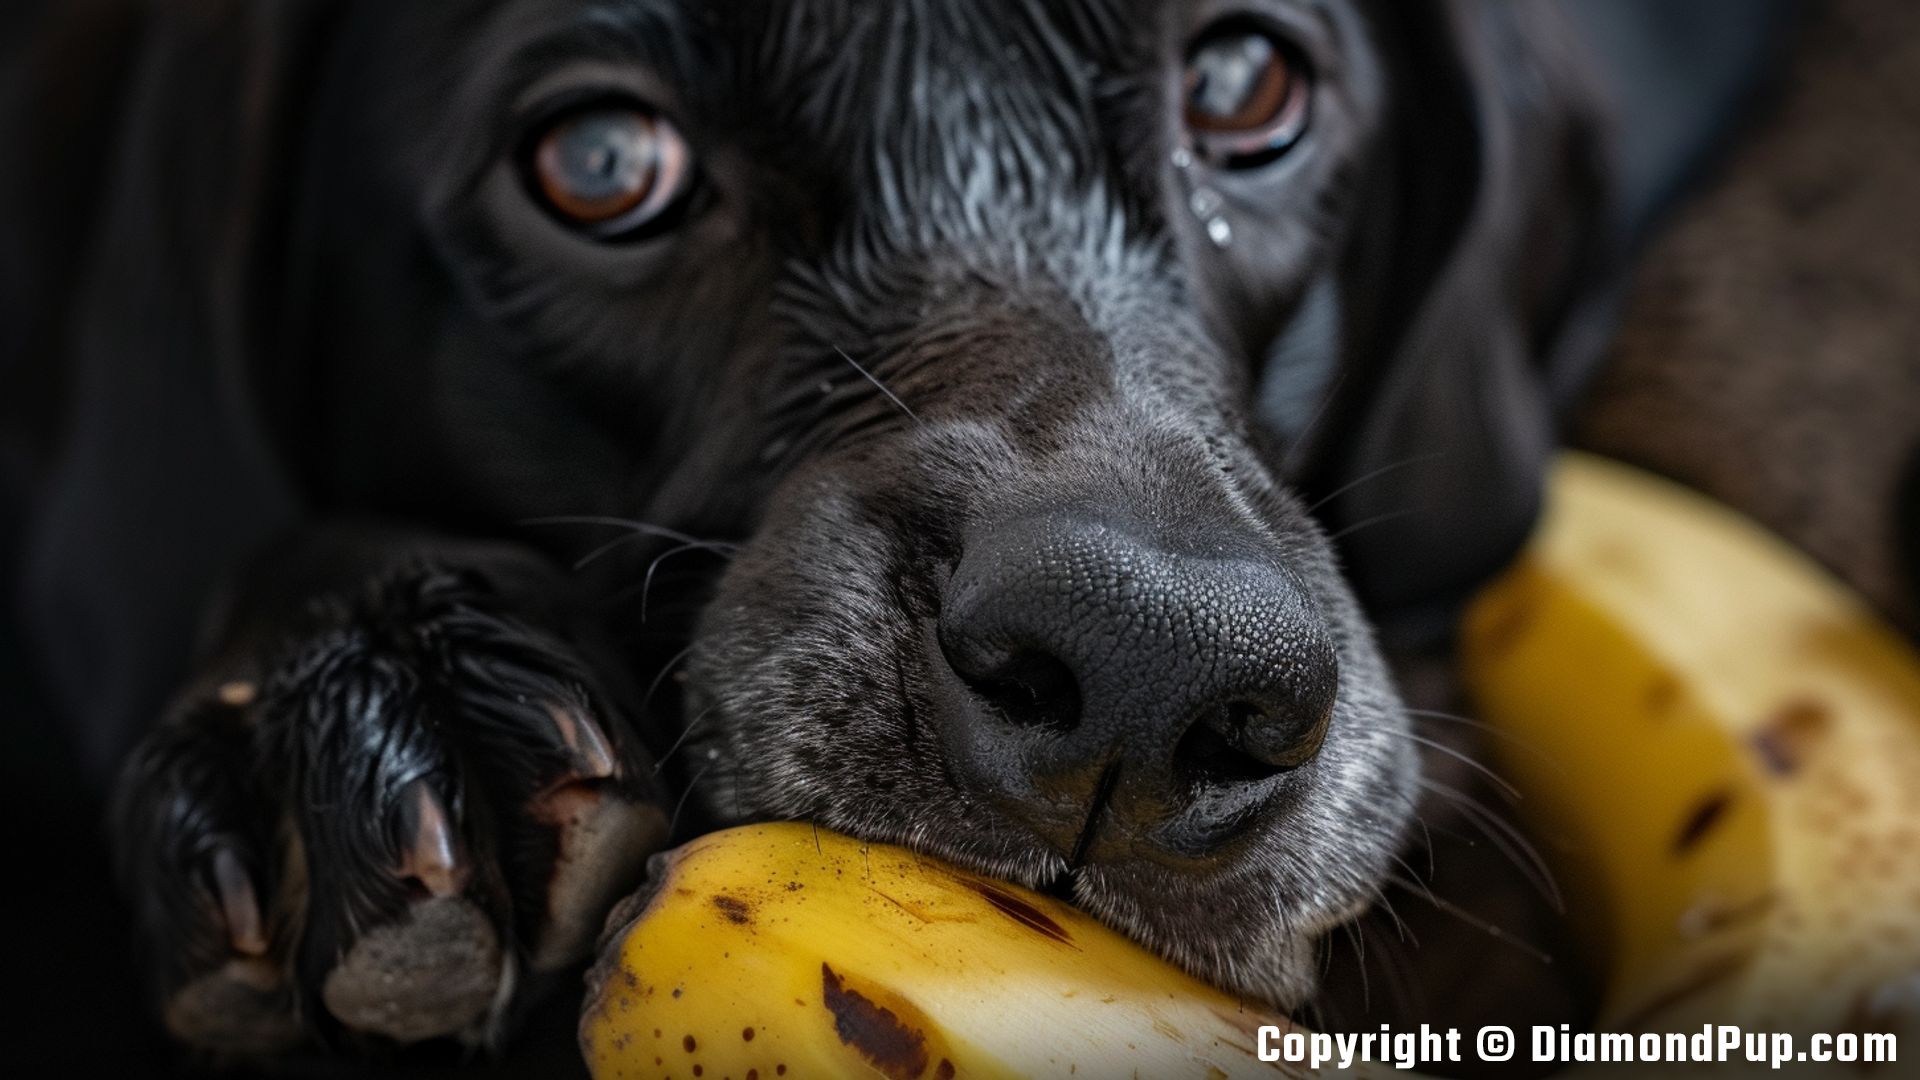 Photograph of a Playful Labrador Snacking on Banana